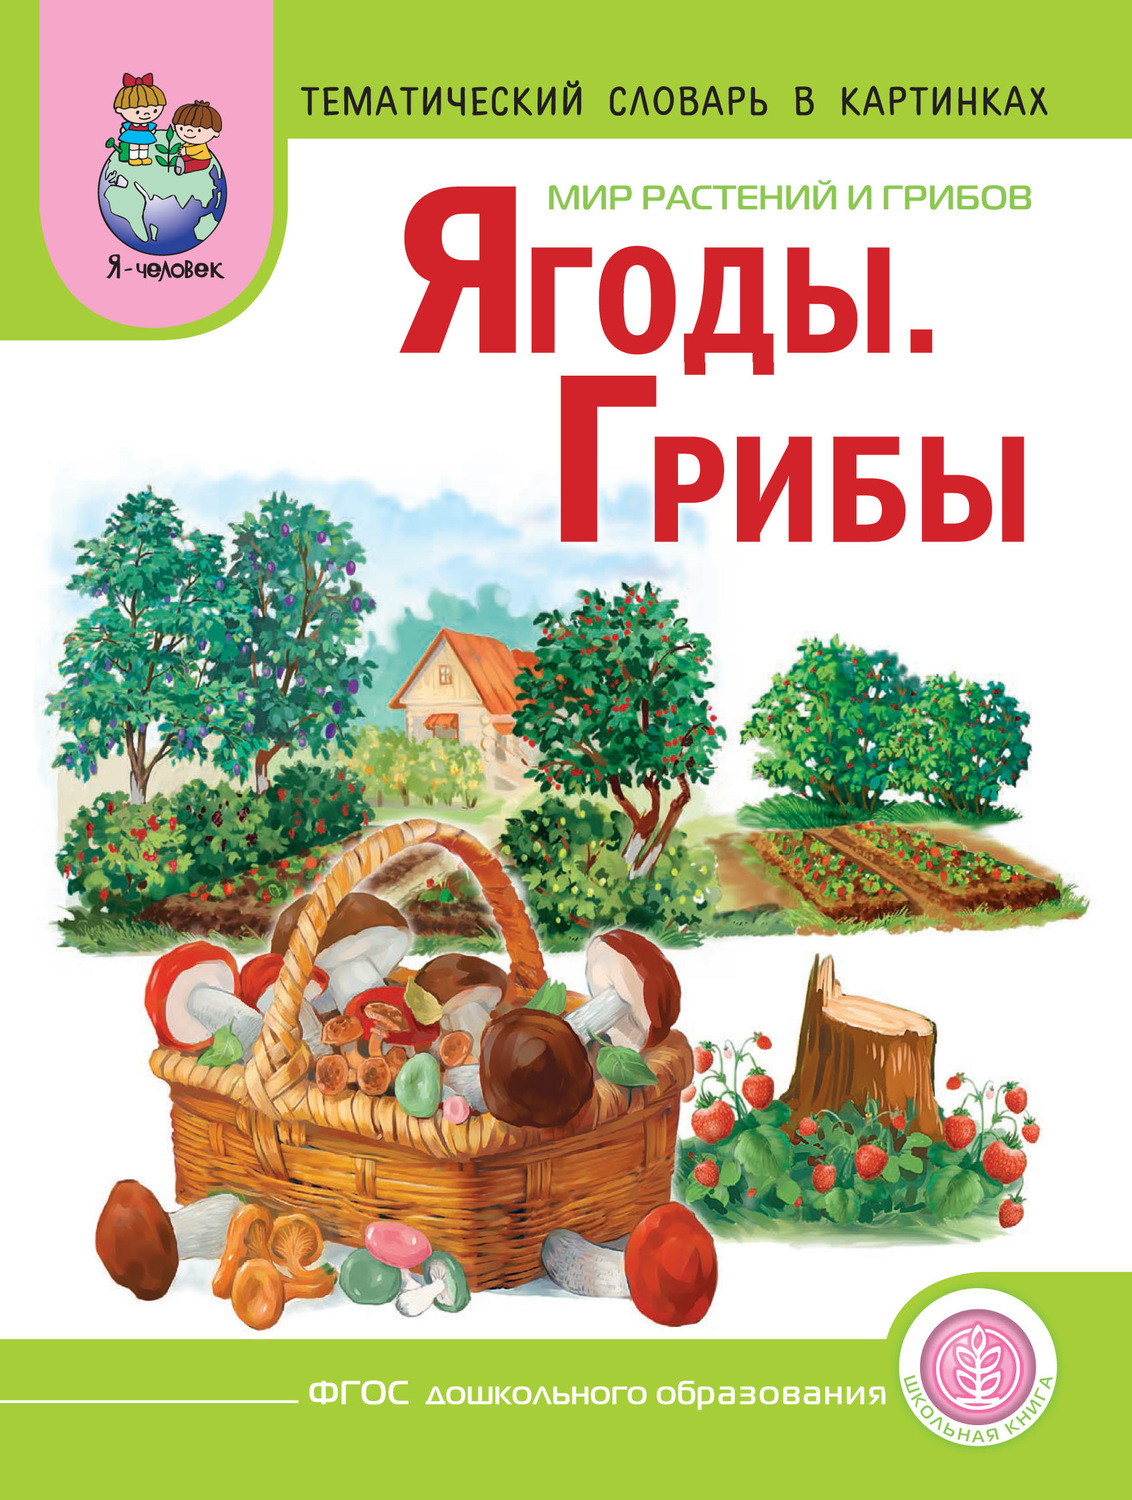 Красная книга мордовии животные и растения фото и информация